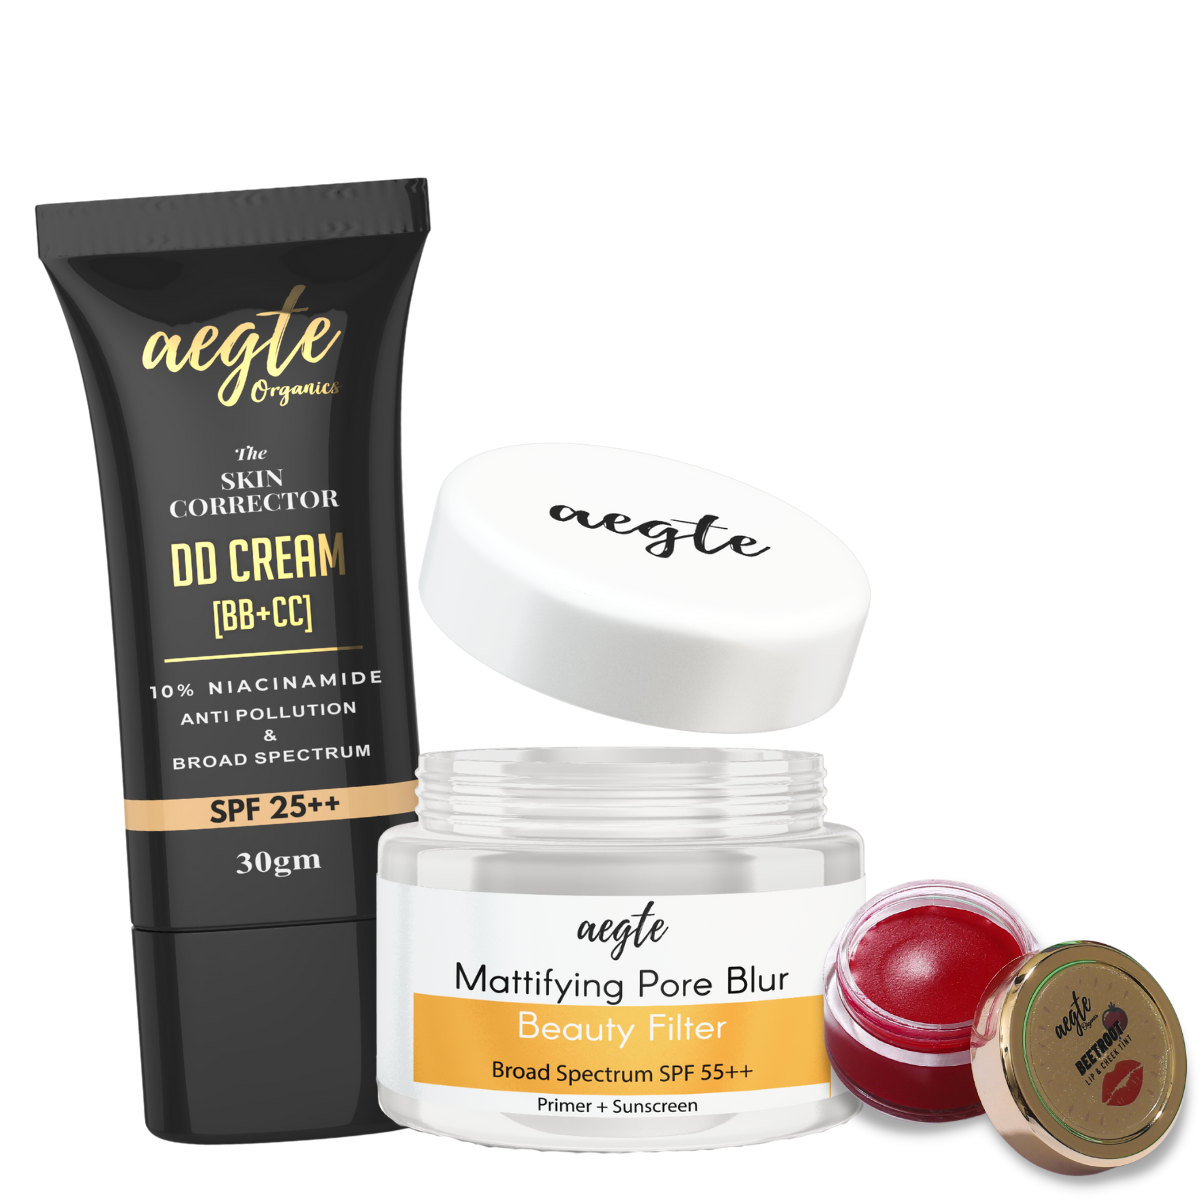 Aegte Mattifying Pore Blur Primer + Sunscreen, Skin Corrector DD Cream & Lip and Cheek Tint